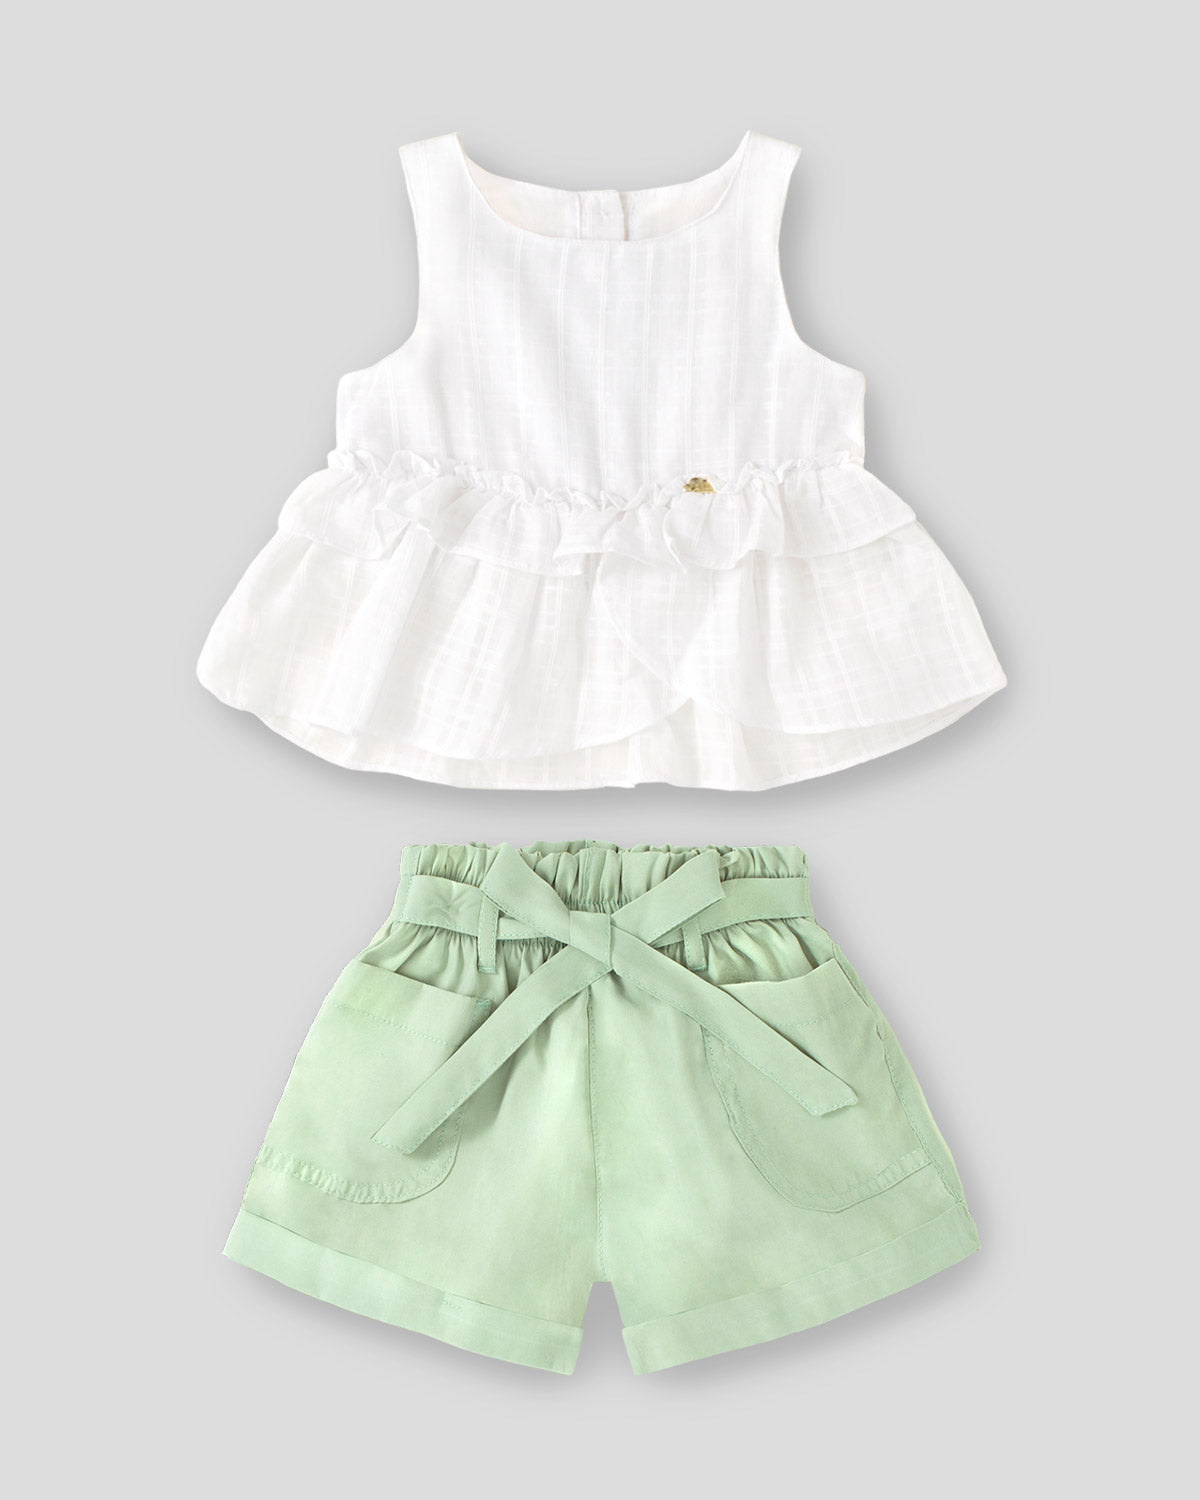 Conjunto blusa blanca con boleros y short verde para niña